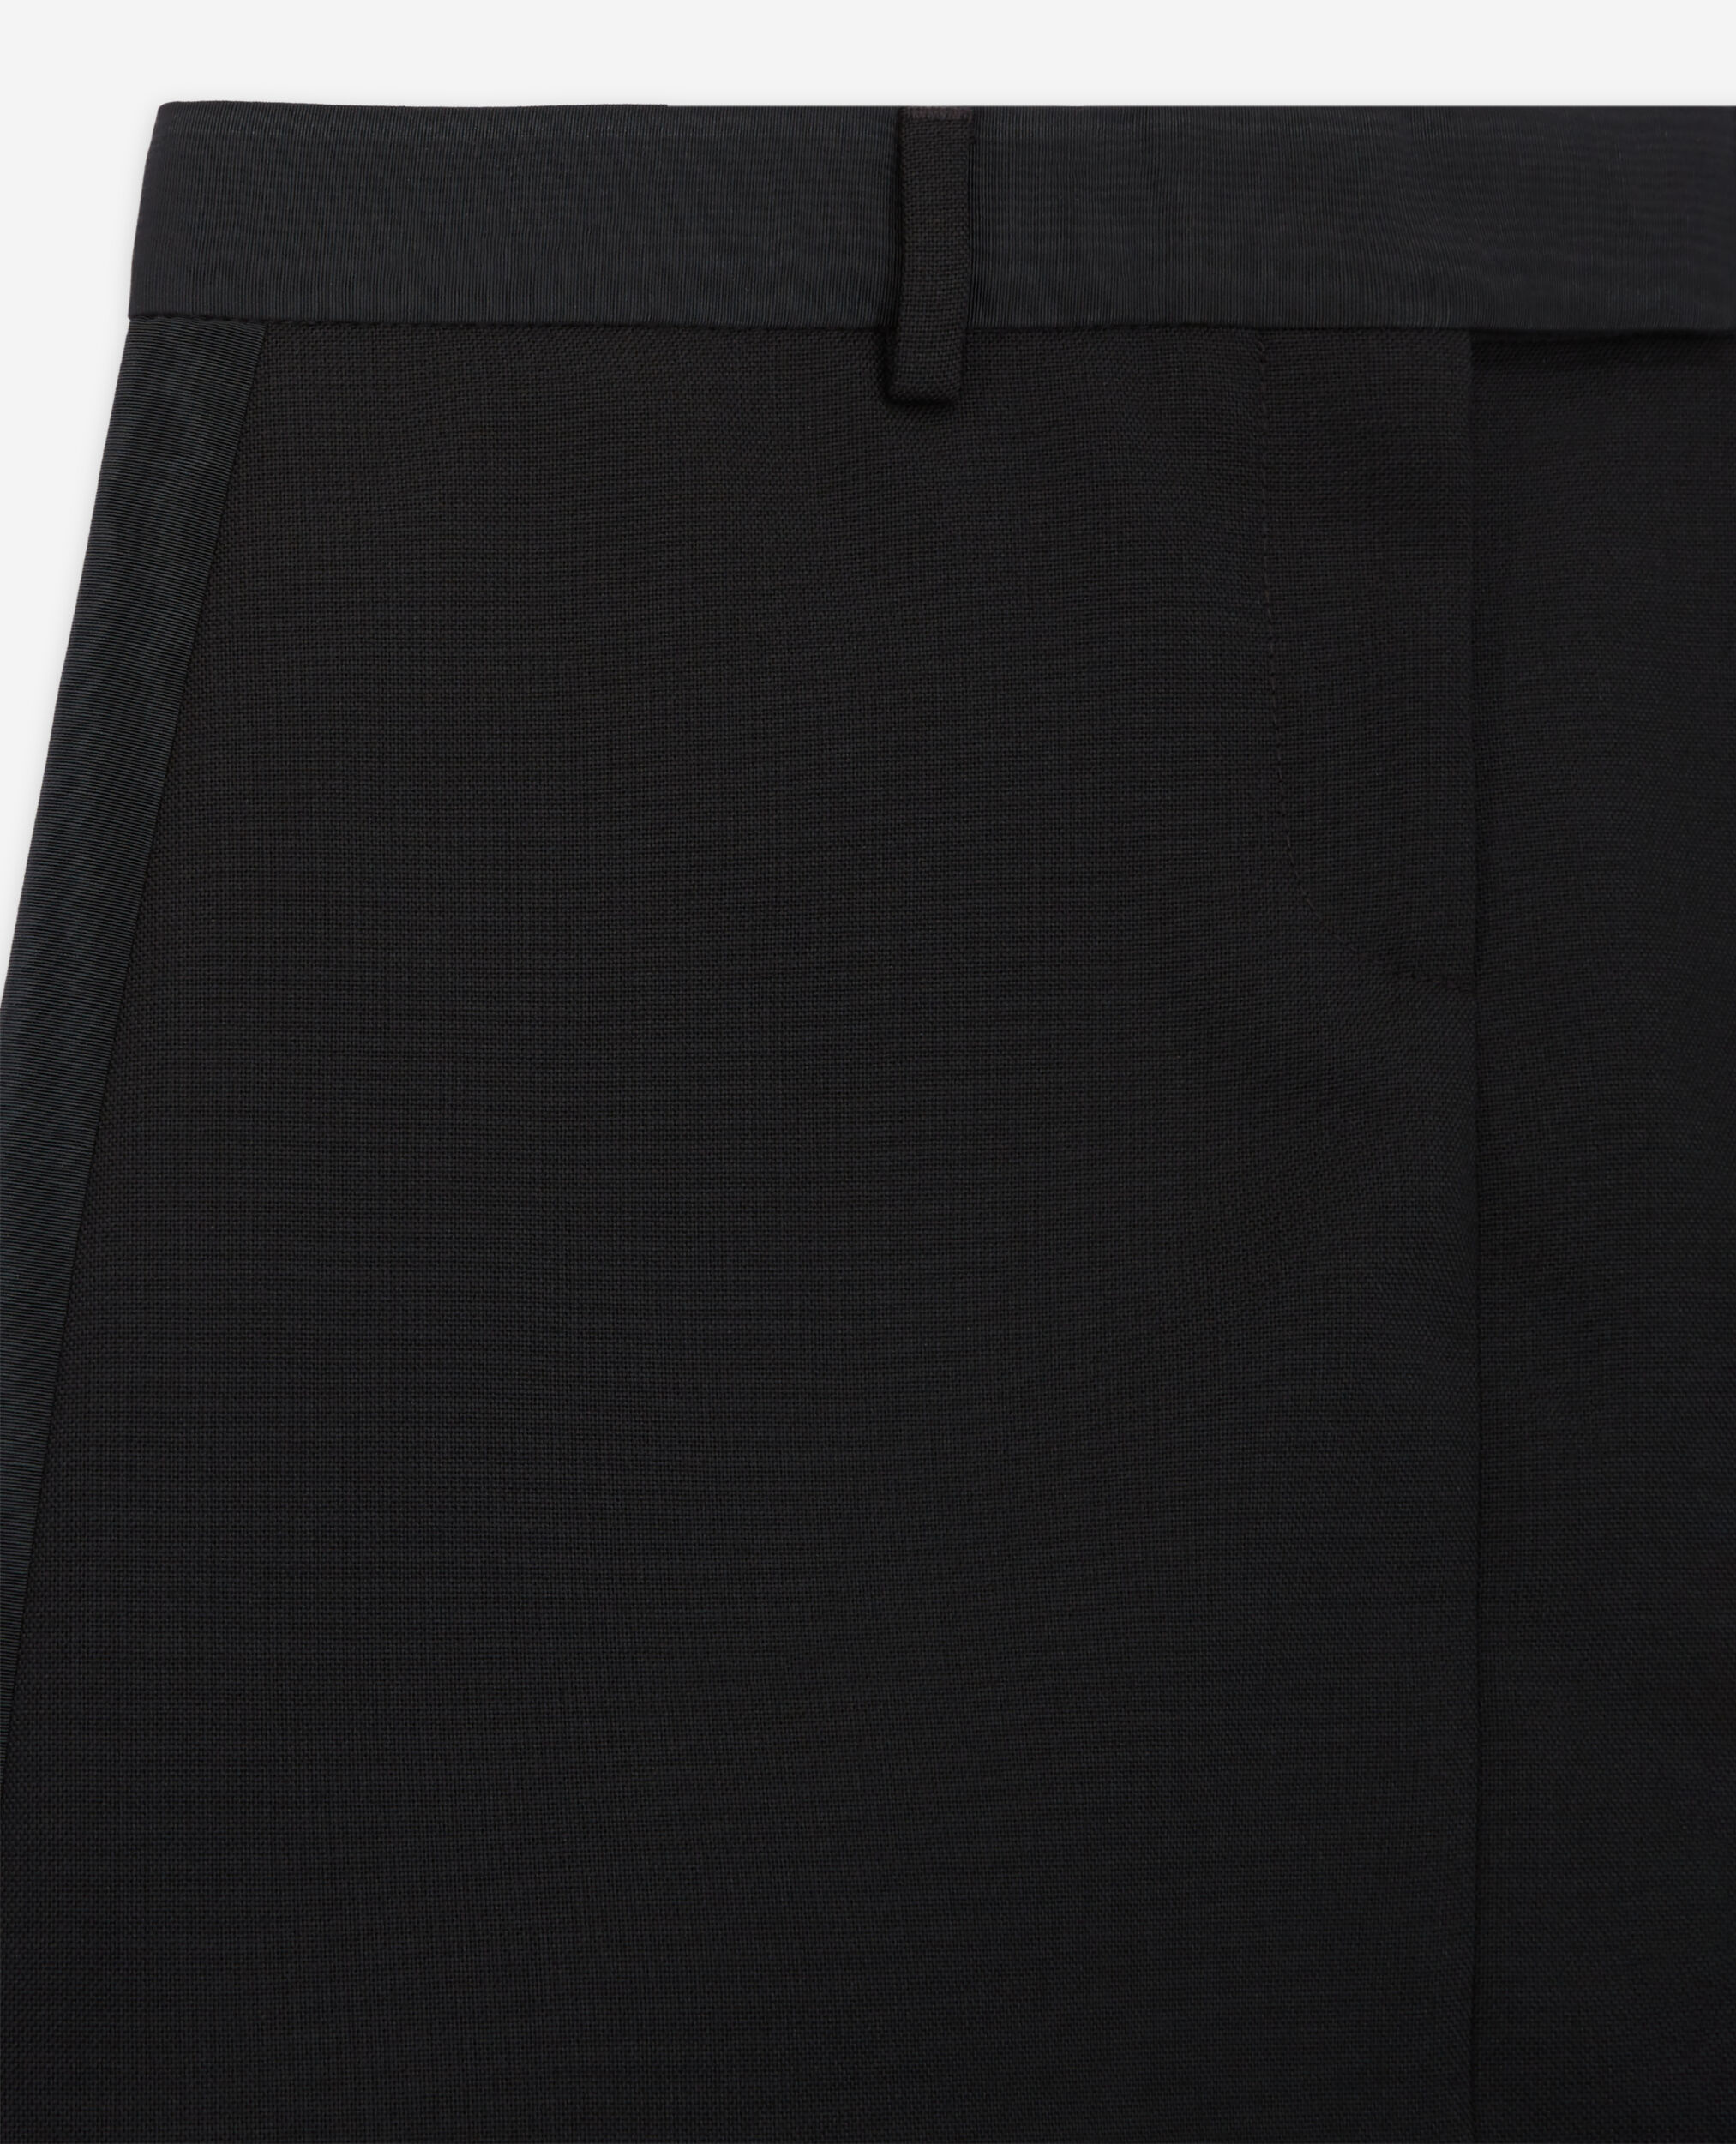 Jupe courte en laine noire, BLACK, hi-res image number null